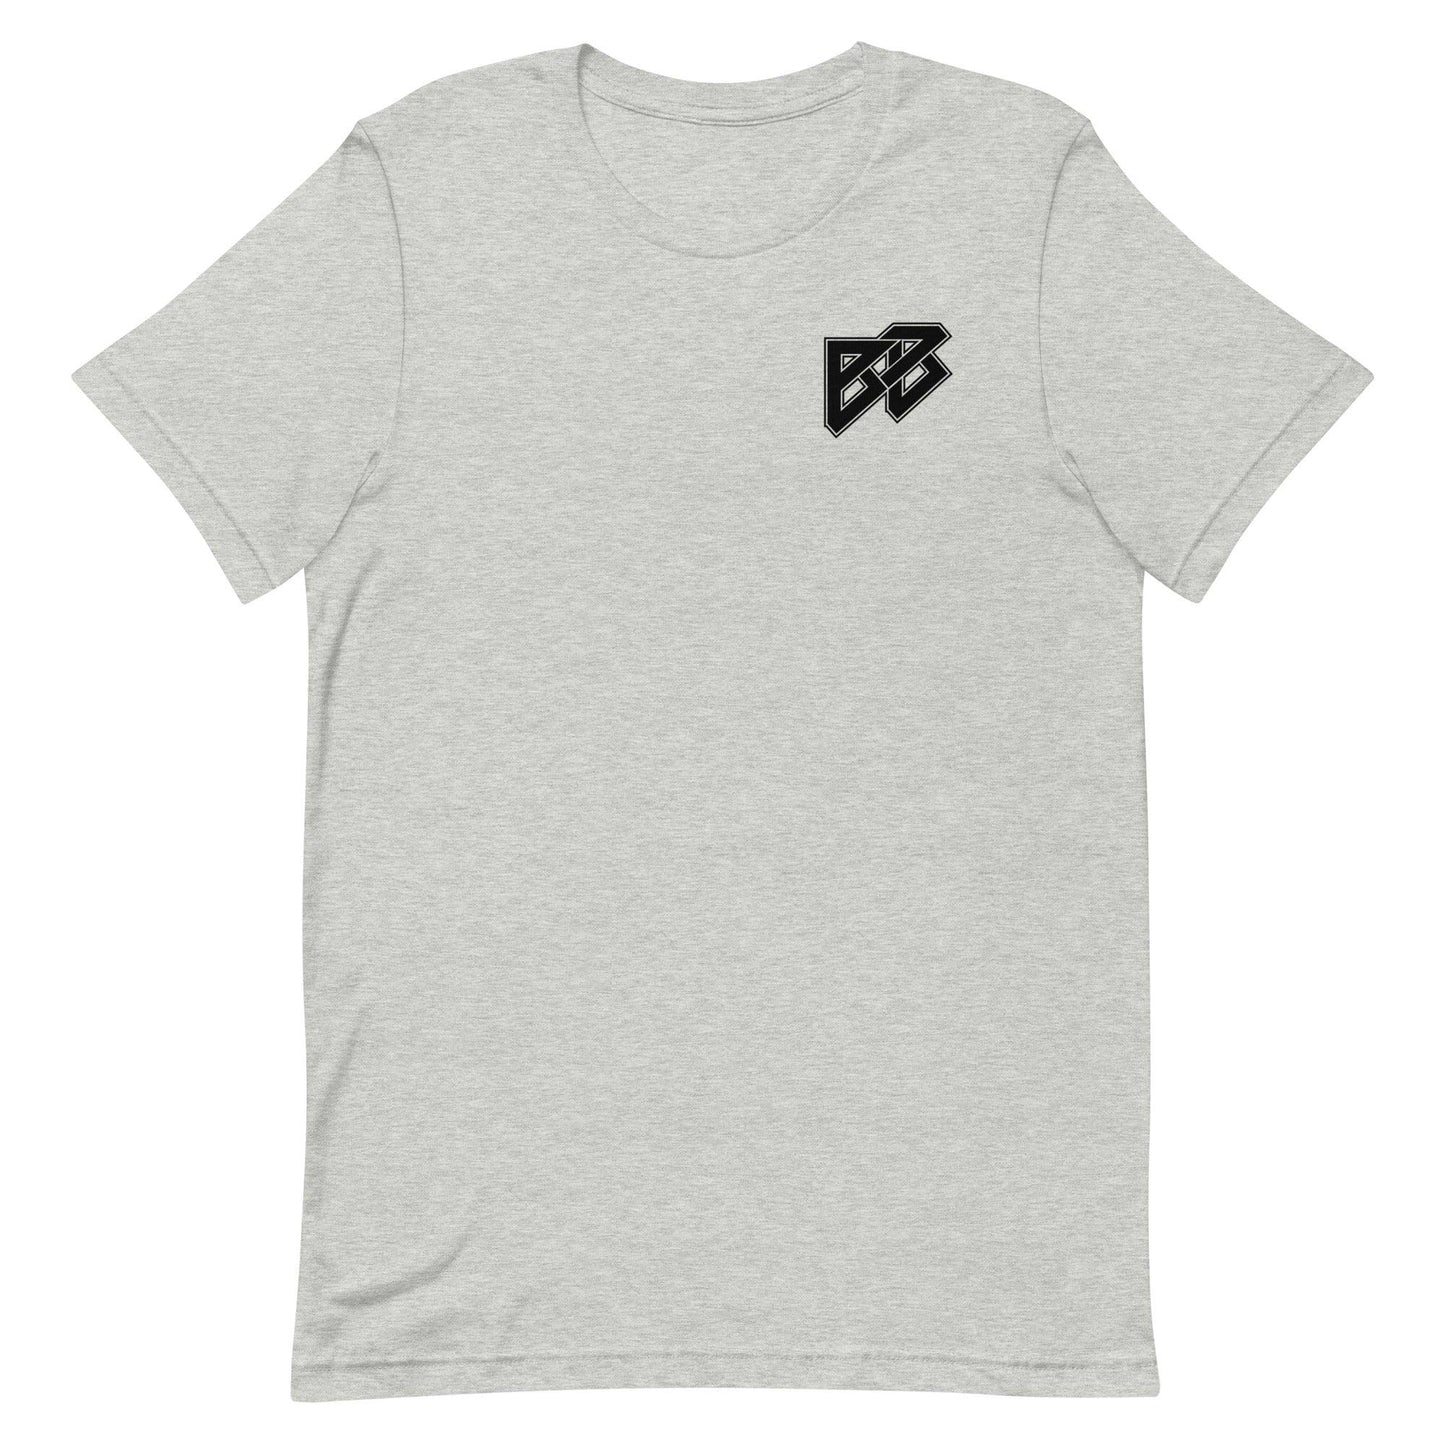 Brad Banks "BB7" t-shirt - Fan Arch